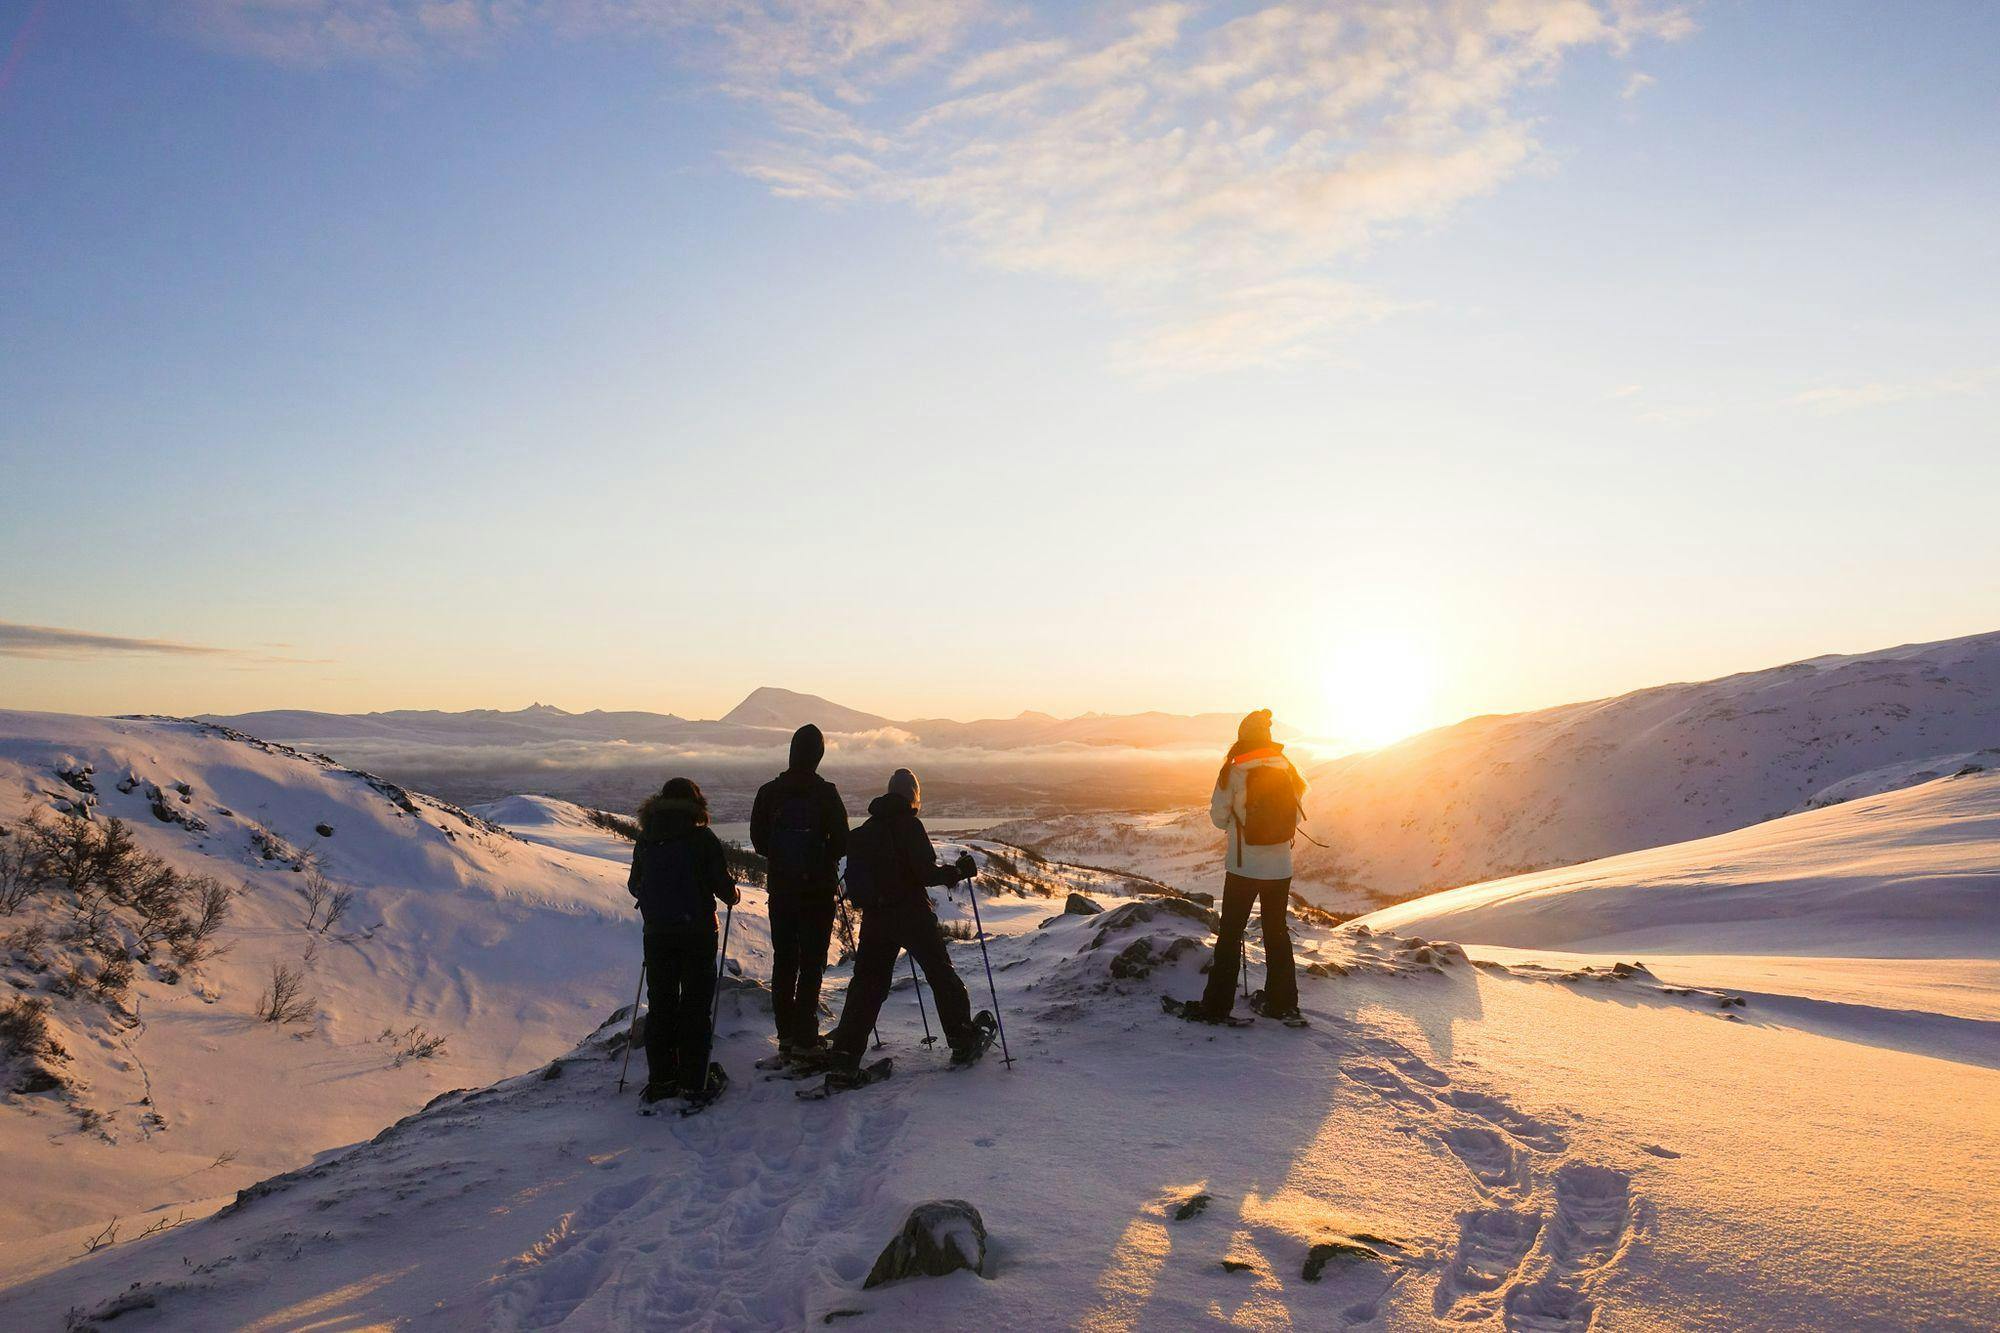 Explore the Troms